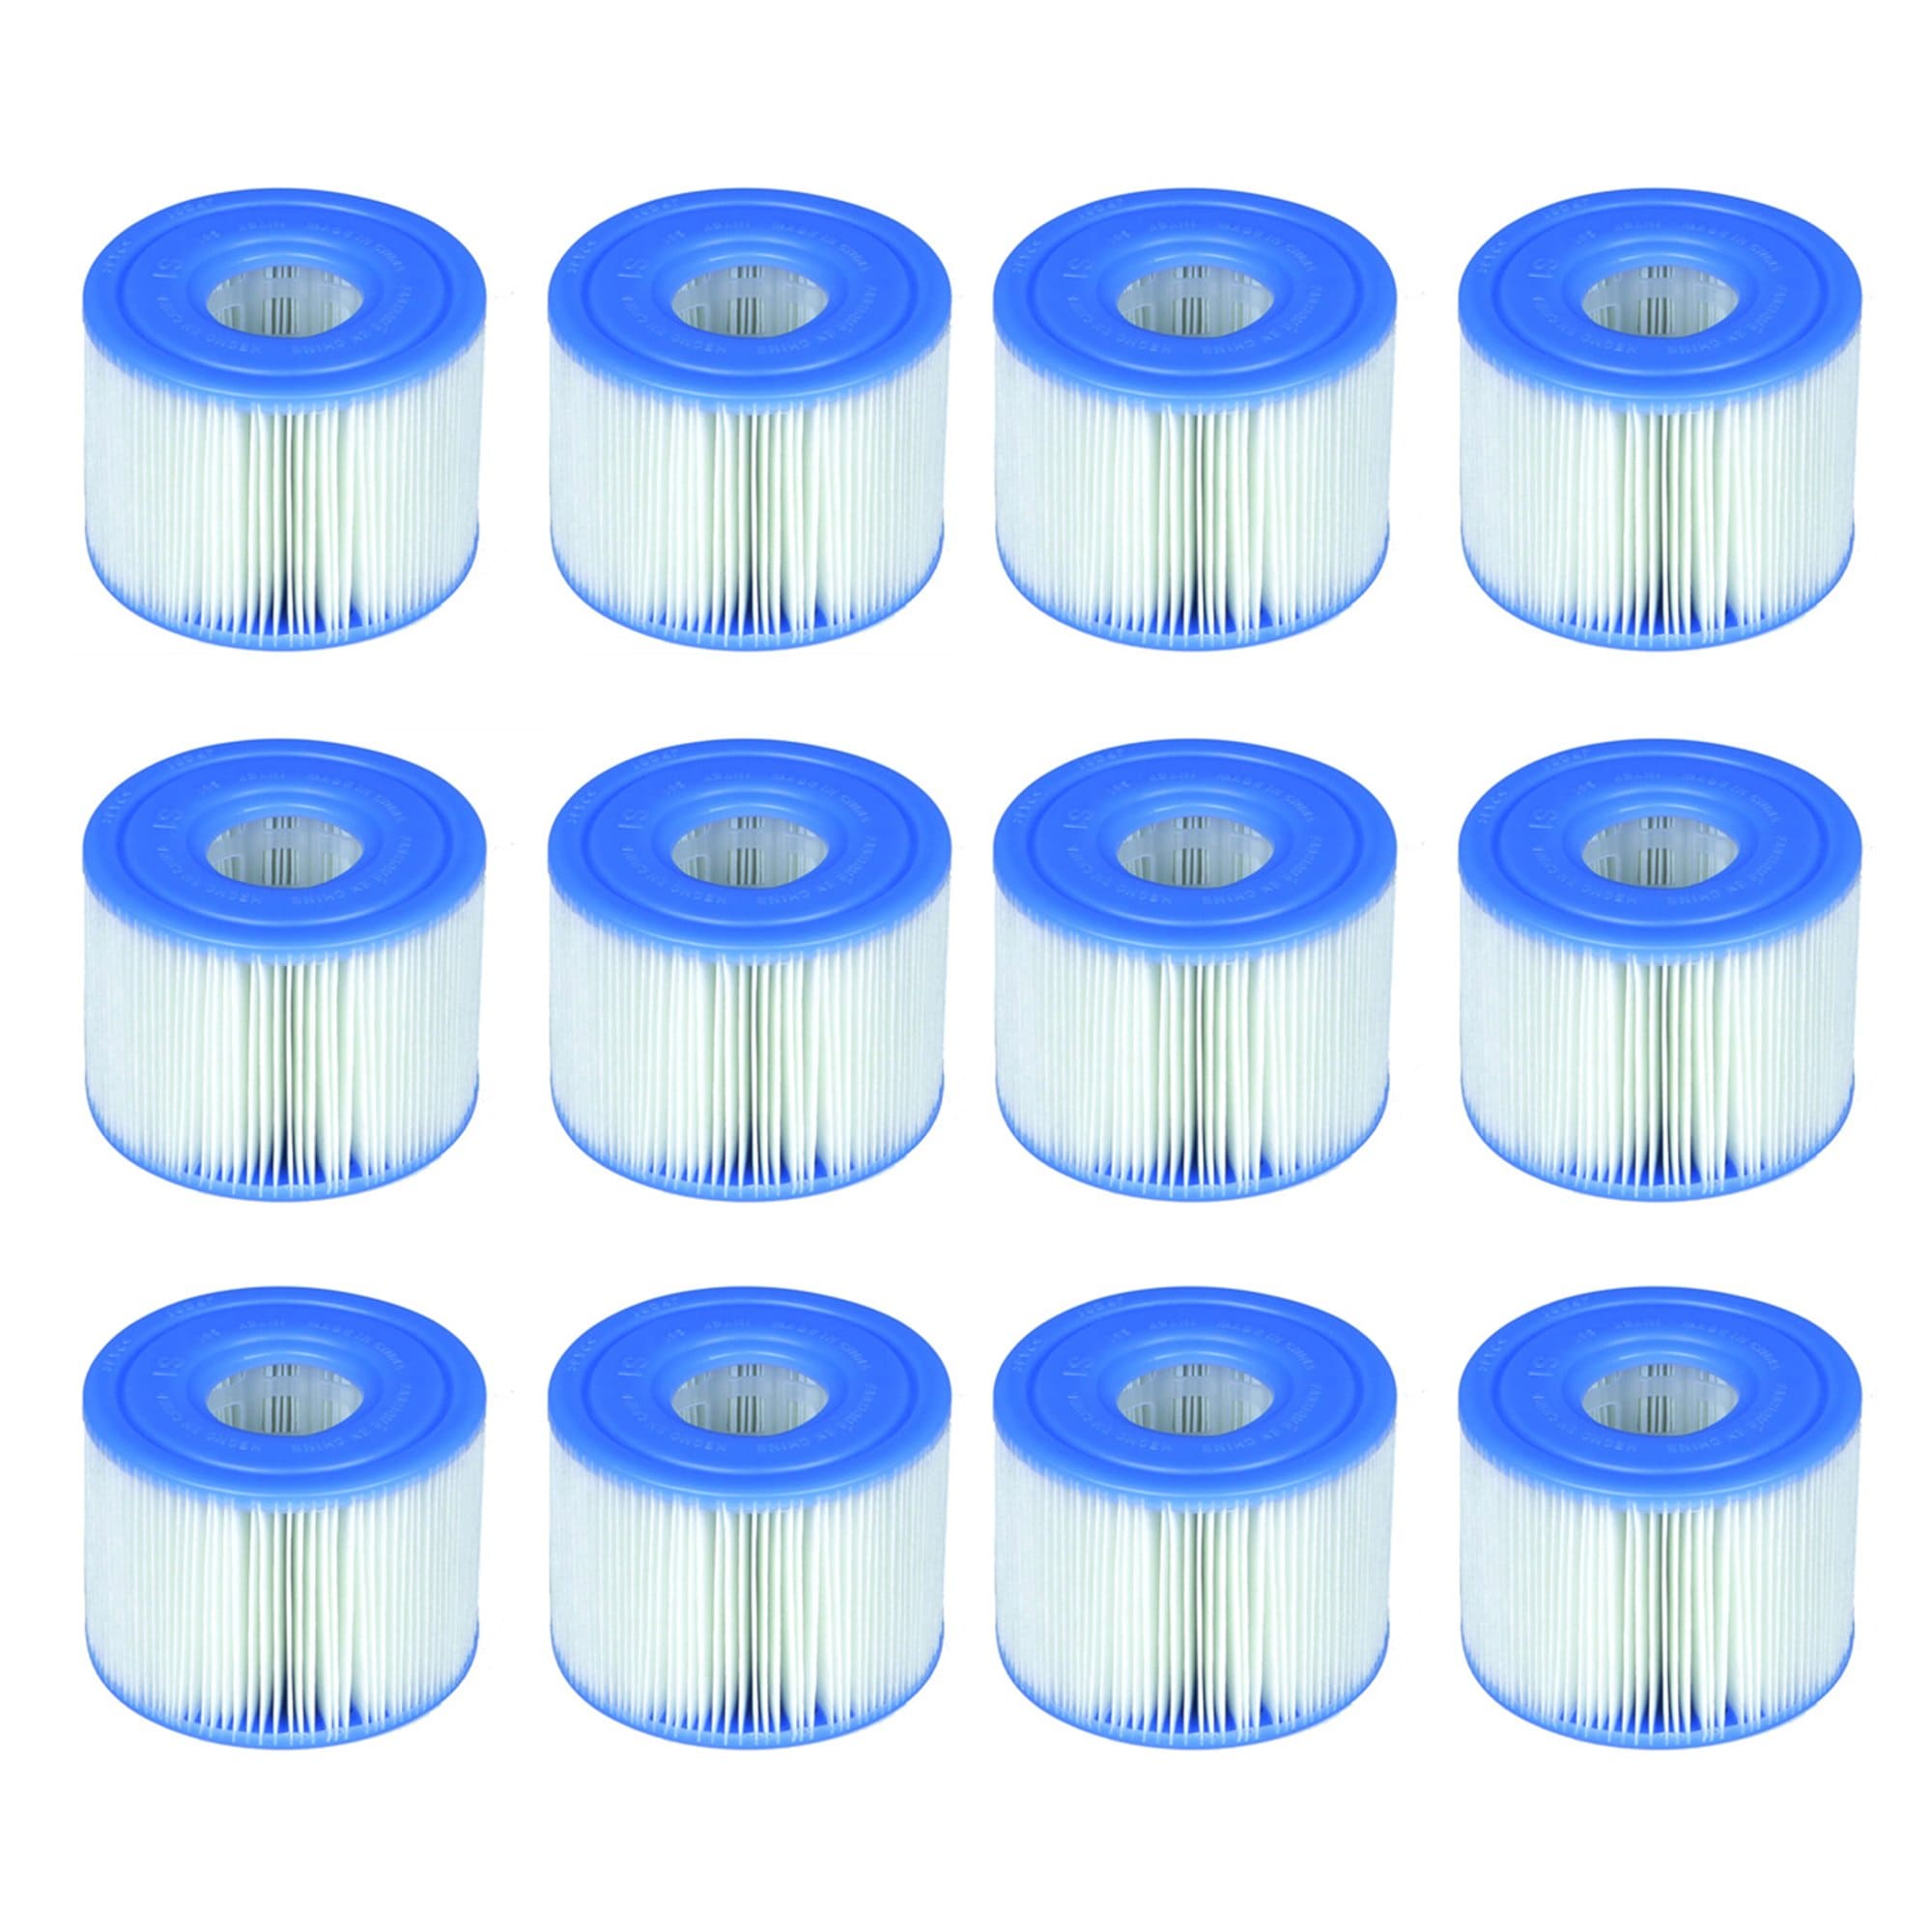 gemiddelde erts kraam Intex 4.25-in x 4.25-in dia 5-sq ft Pool Cartridge Filter 12-Pack in the  Pool Cartridge Filters department at Lowes.com